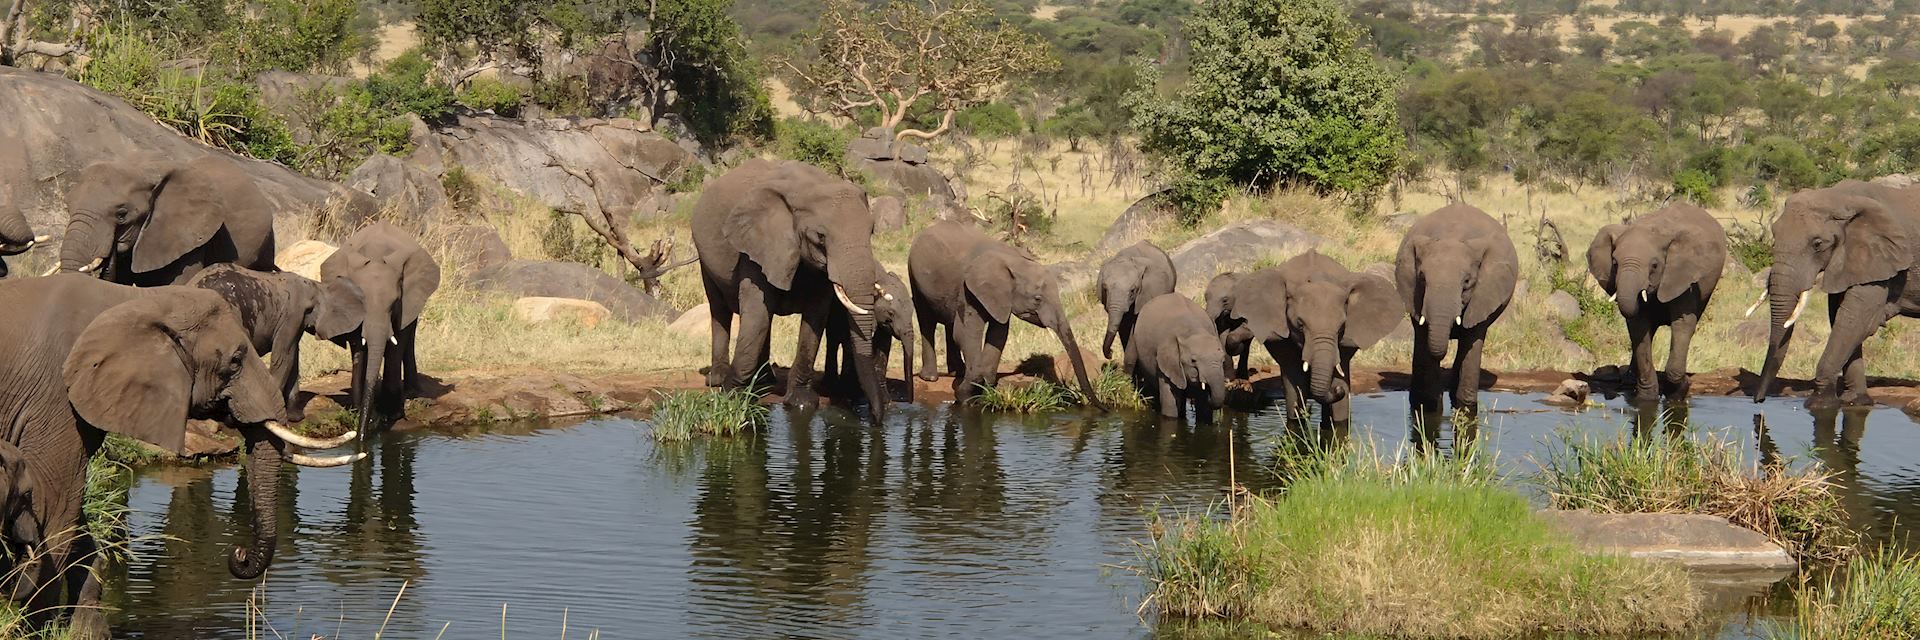 Elephant drinking, Serengeti National Park